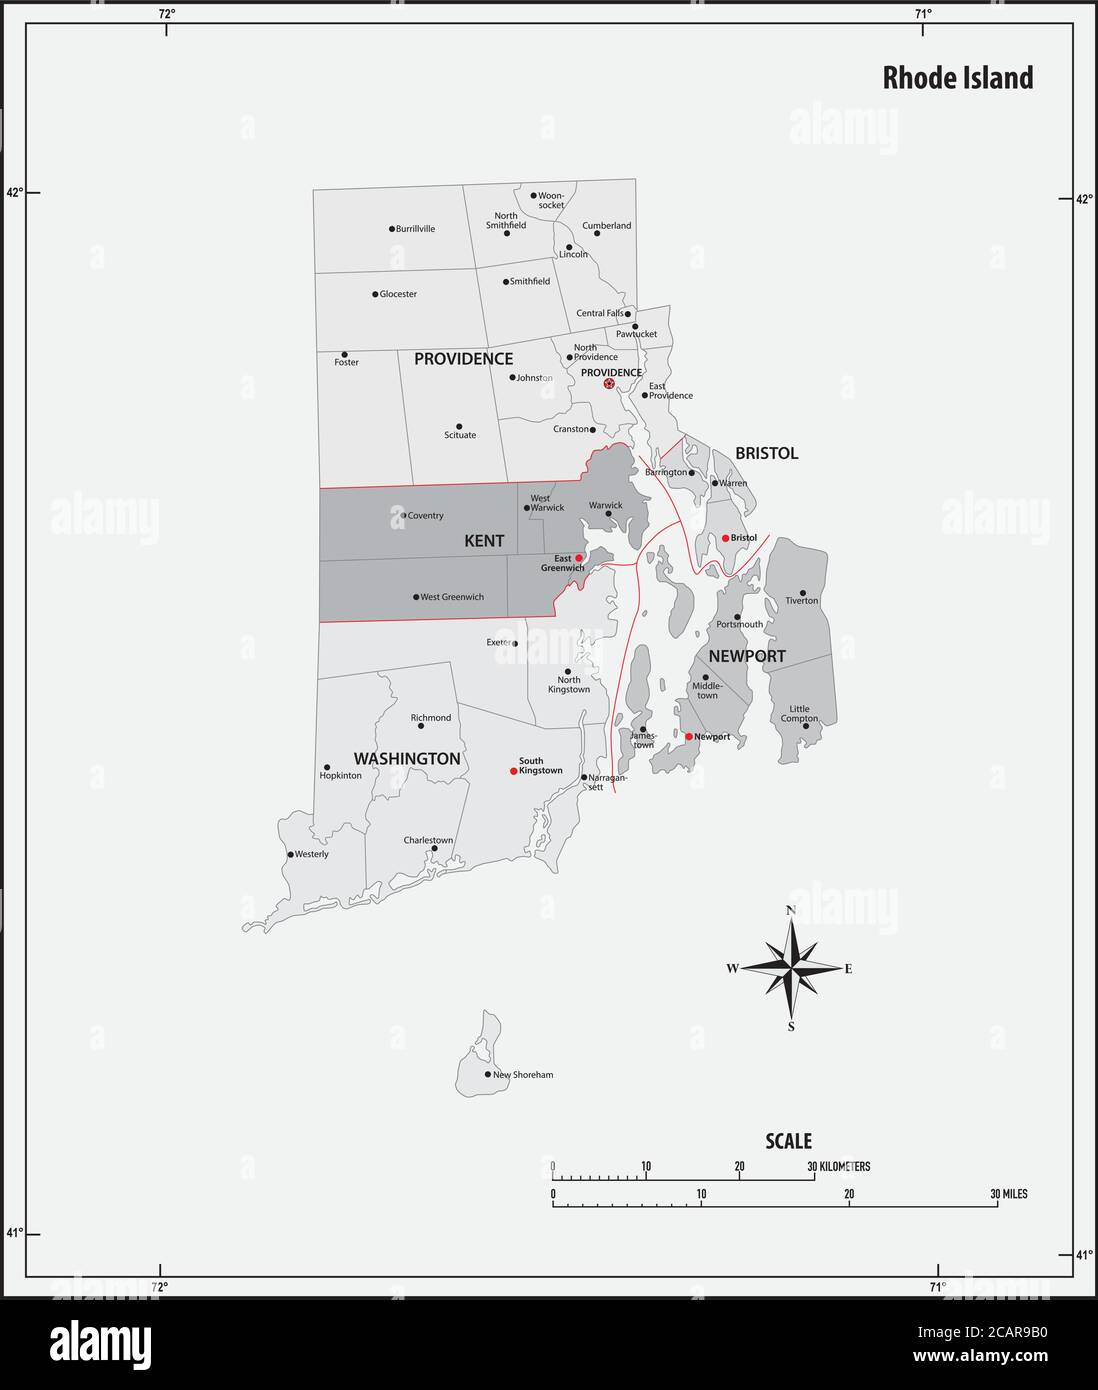 rhode Island State skizzieren administrative und politische Vektor-Karte in schwarz-weiß Stock Vektor